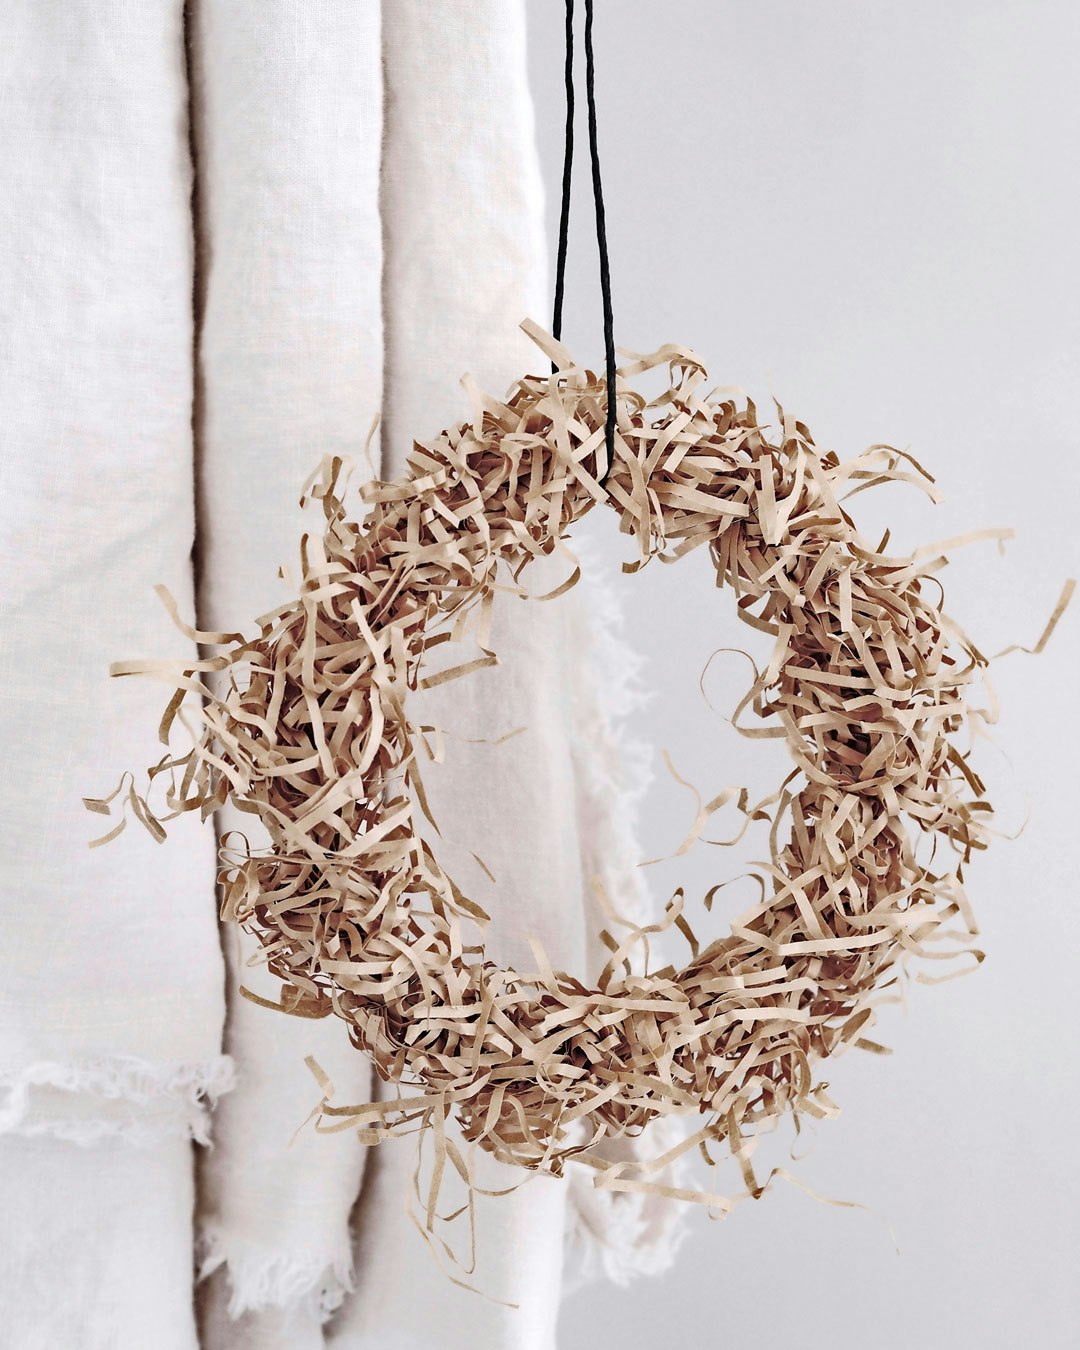 Pynt op til jul med en bæredygtig krans af papirstrimler